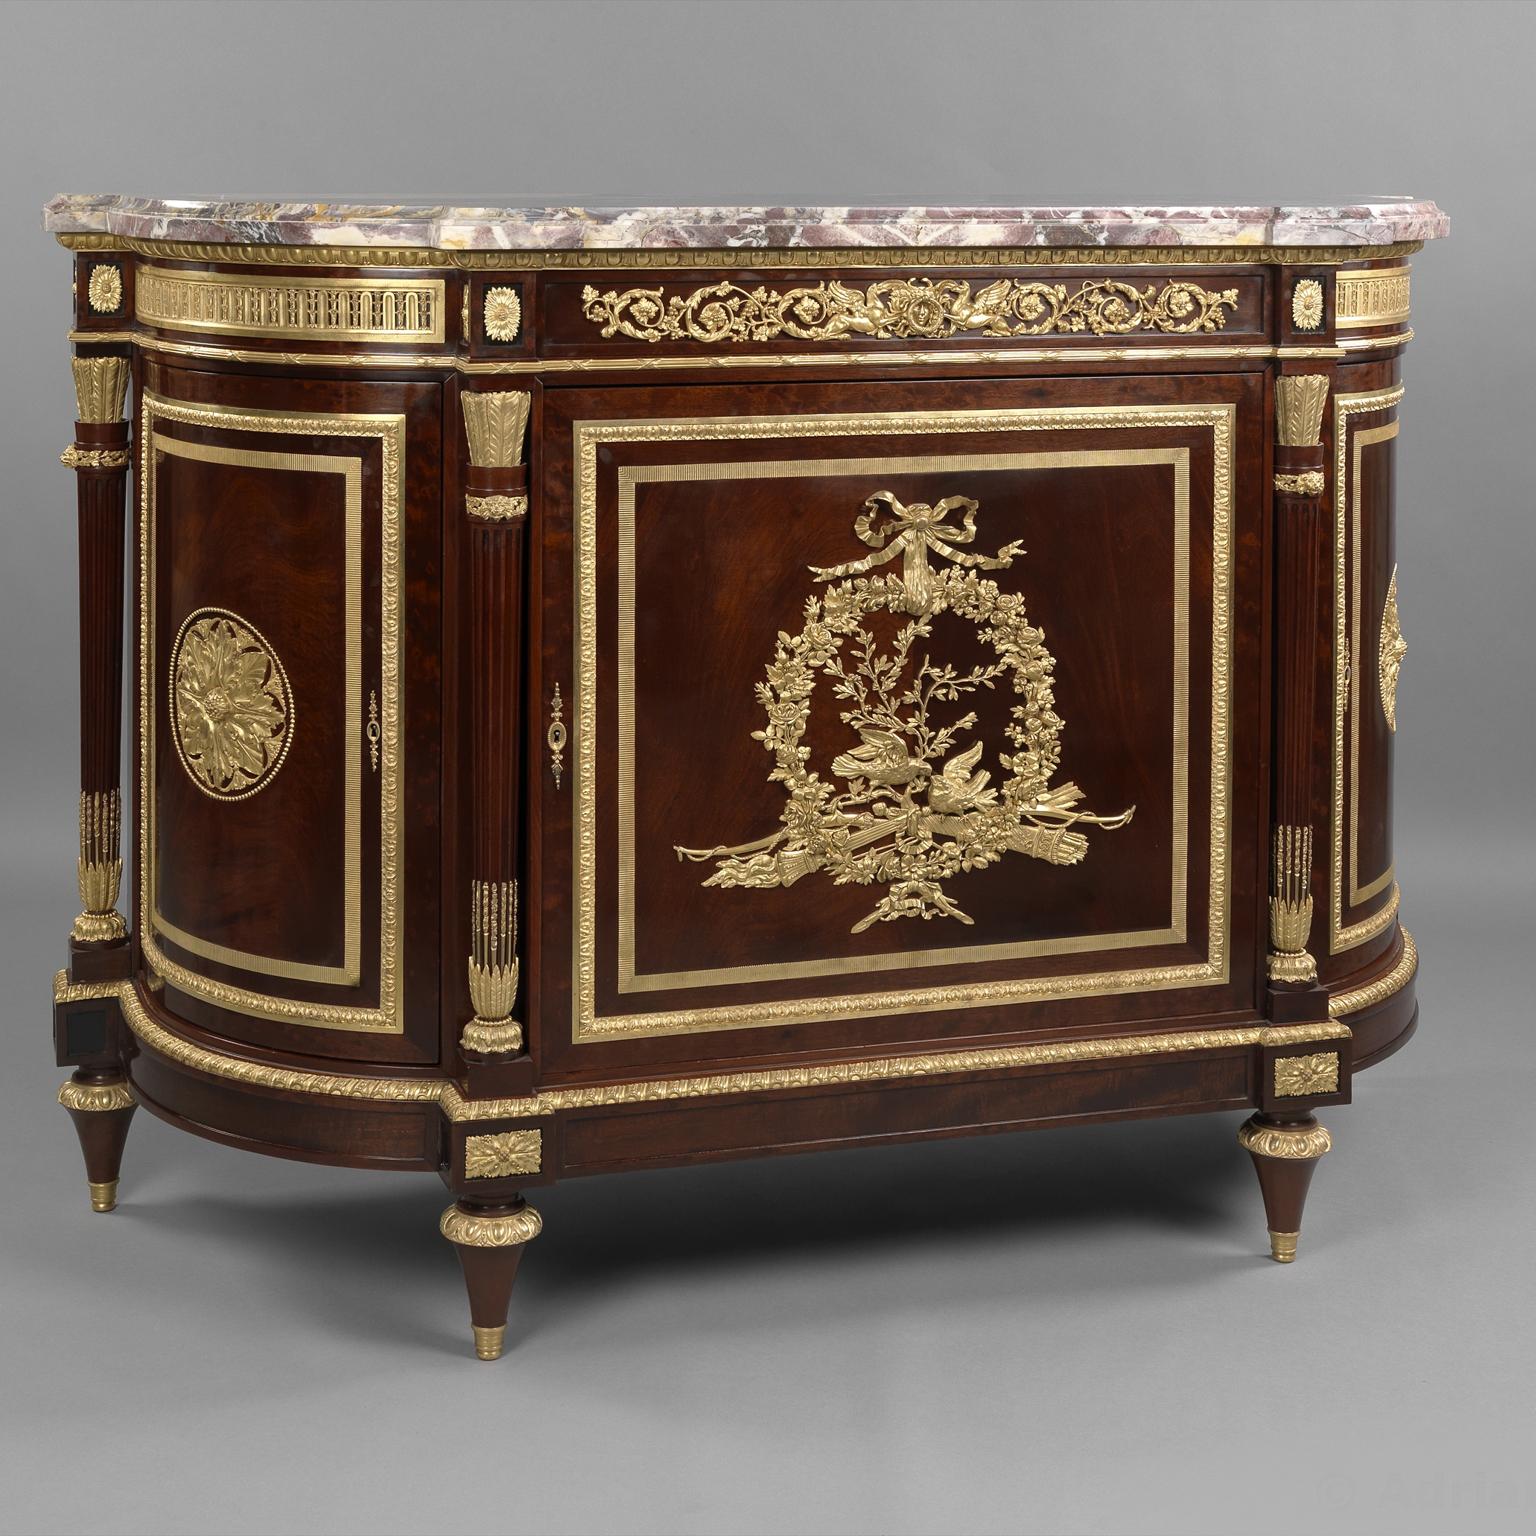 Très beau meuble d'appoint en acajou monté en bronze doré, de style Louis XVI, avec un plateau en marbre Brèche Violette, par Henry Dasson.

Estampillé sur le dessus de la carcasse 